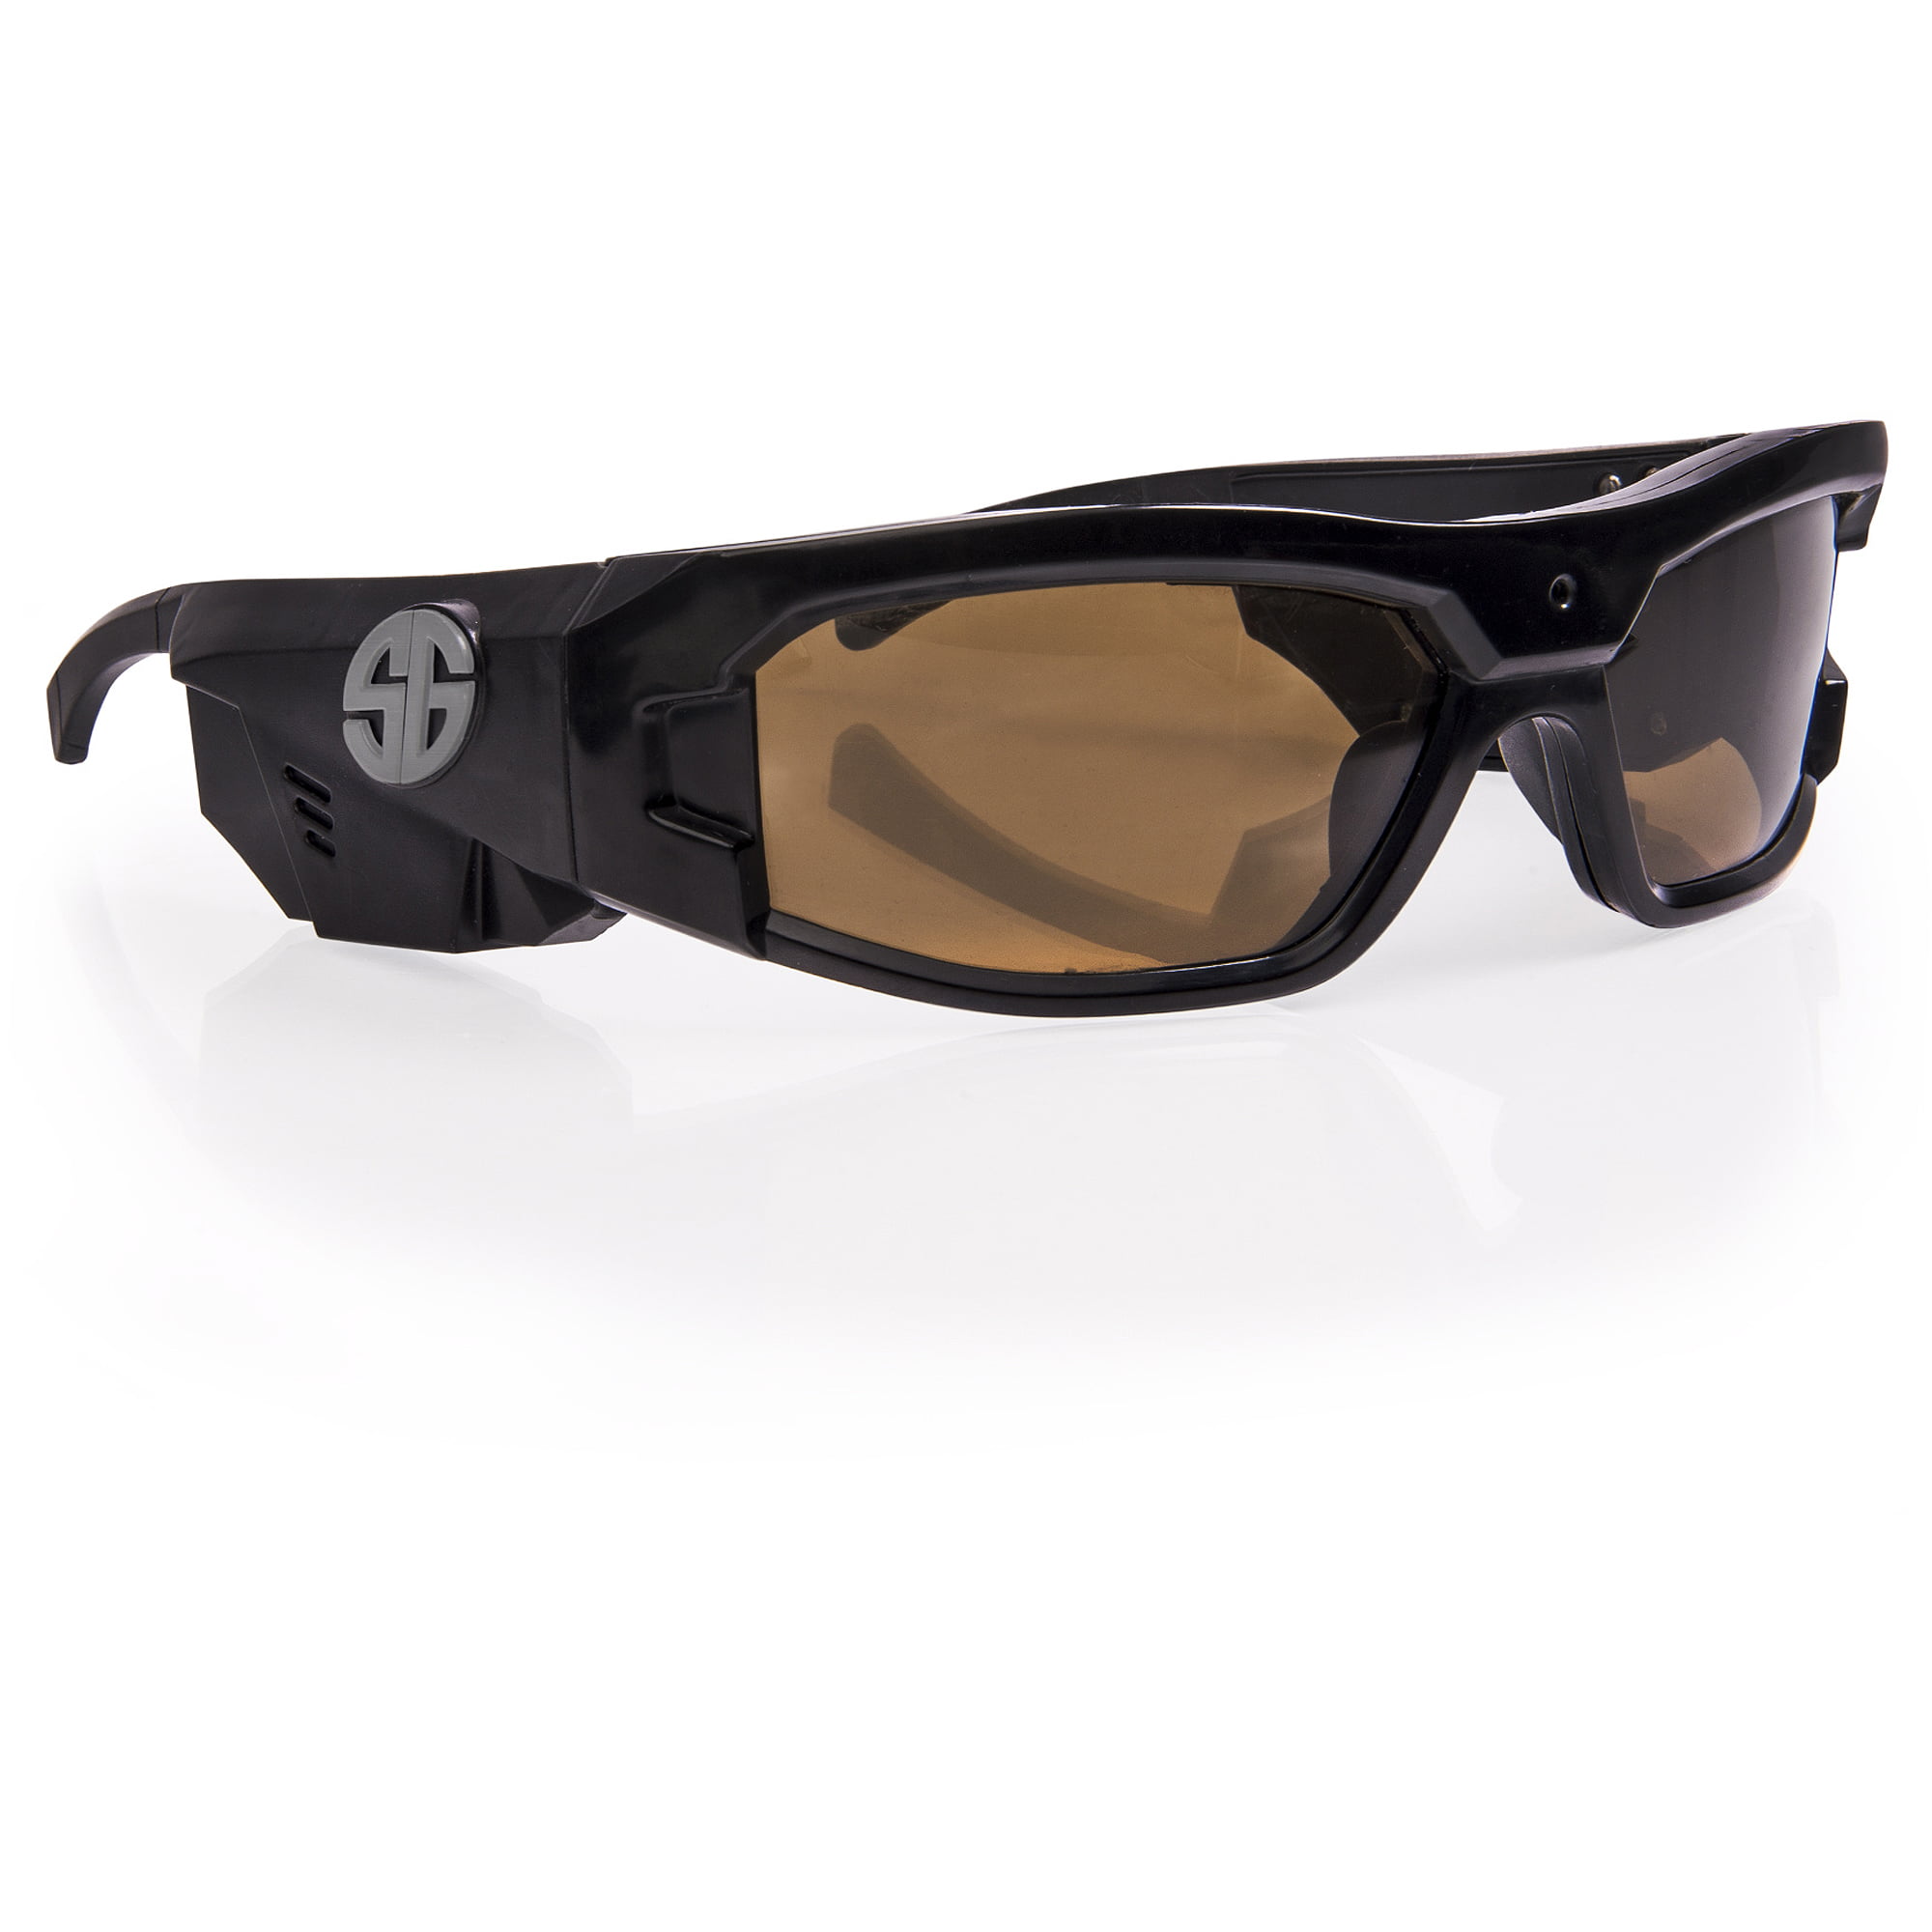 Spy Gear Spy Specs Glasses Walmart.com